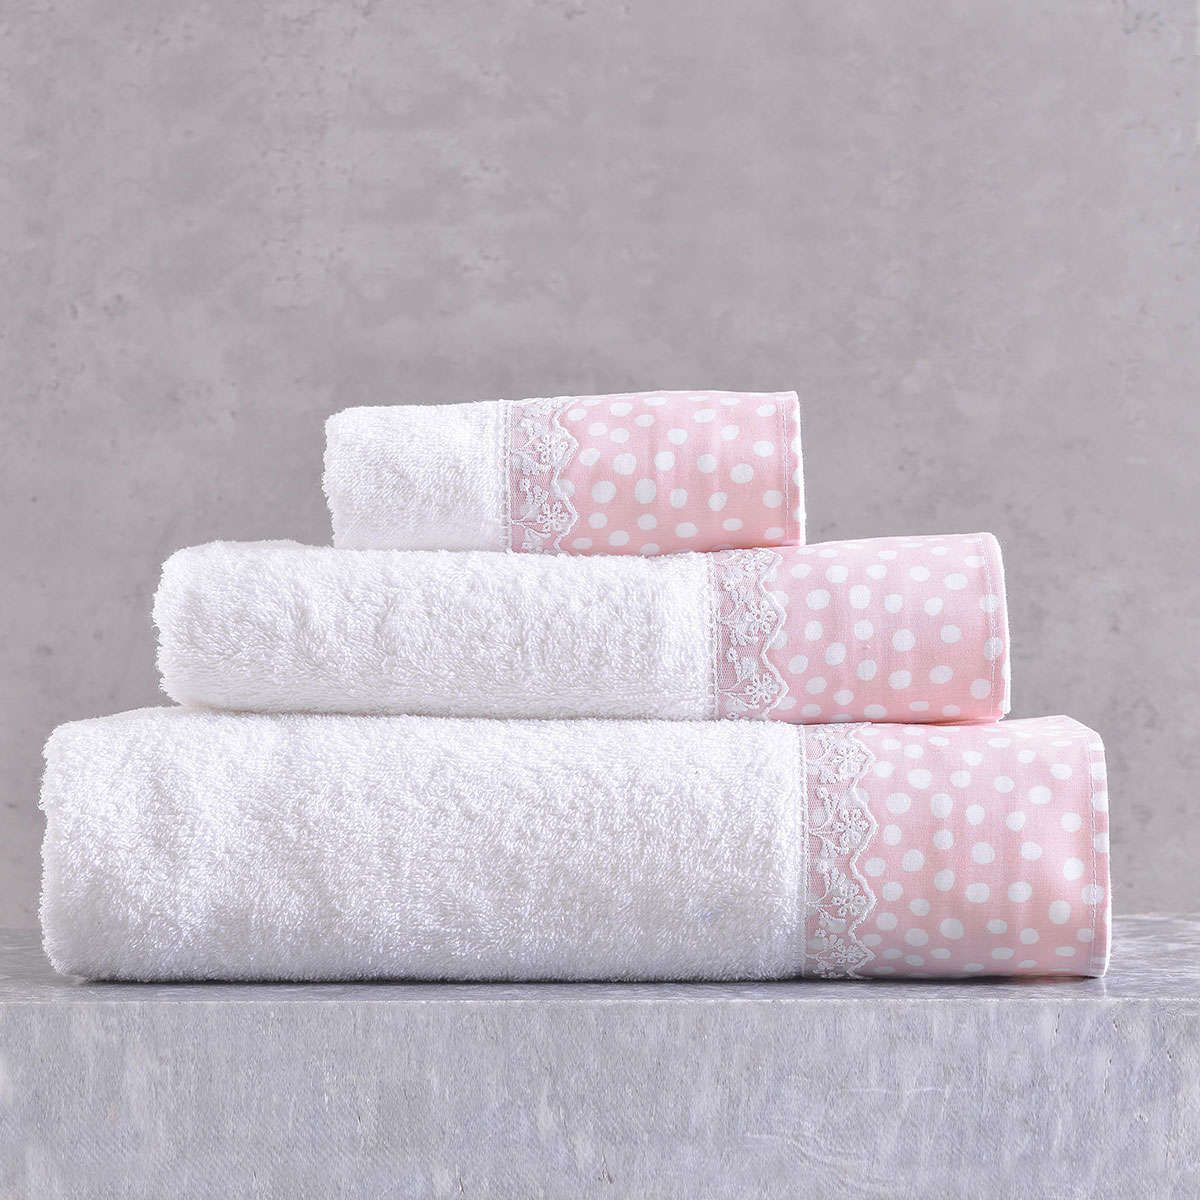 Πετσέτες σετ 3τμχ. σε κουτί Cute pink rythmos